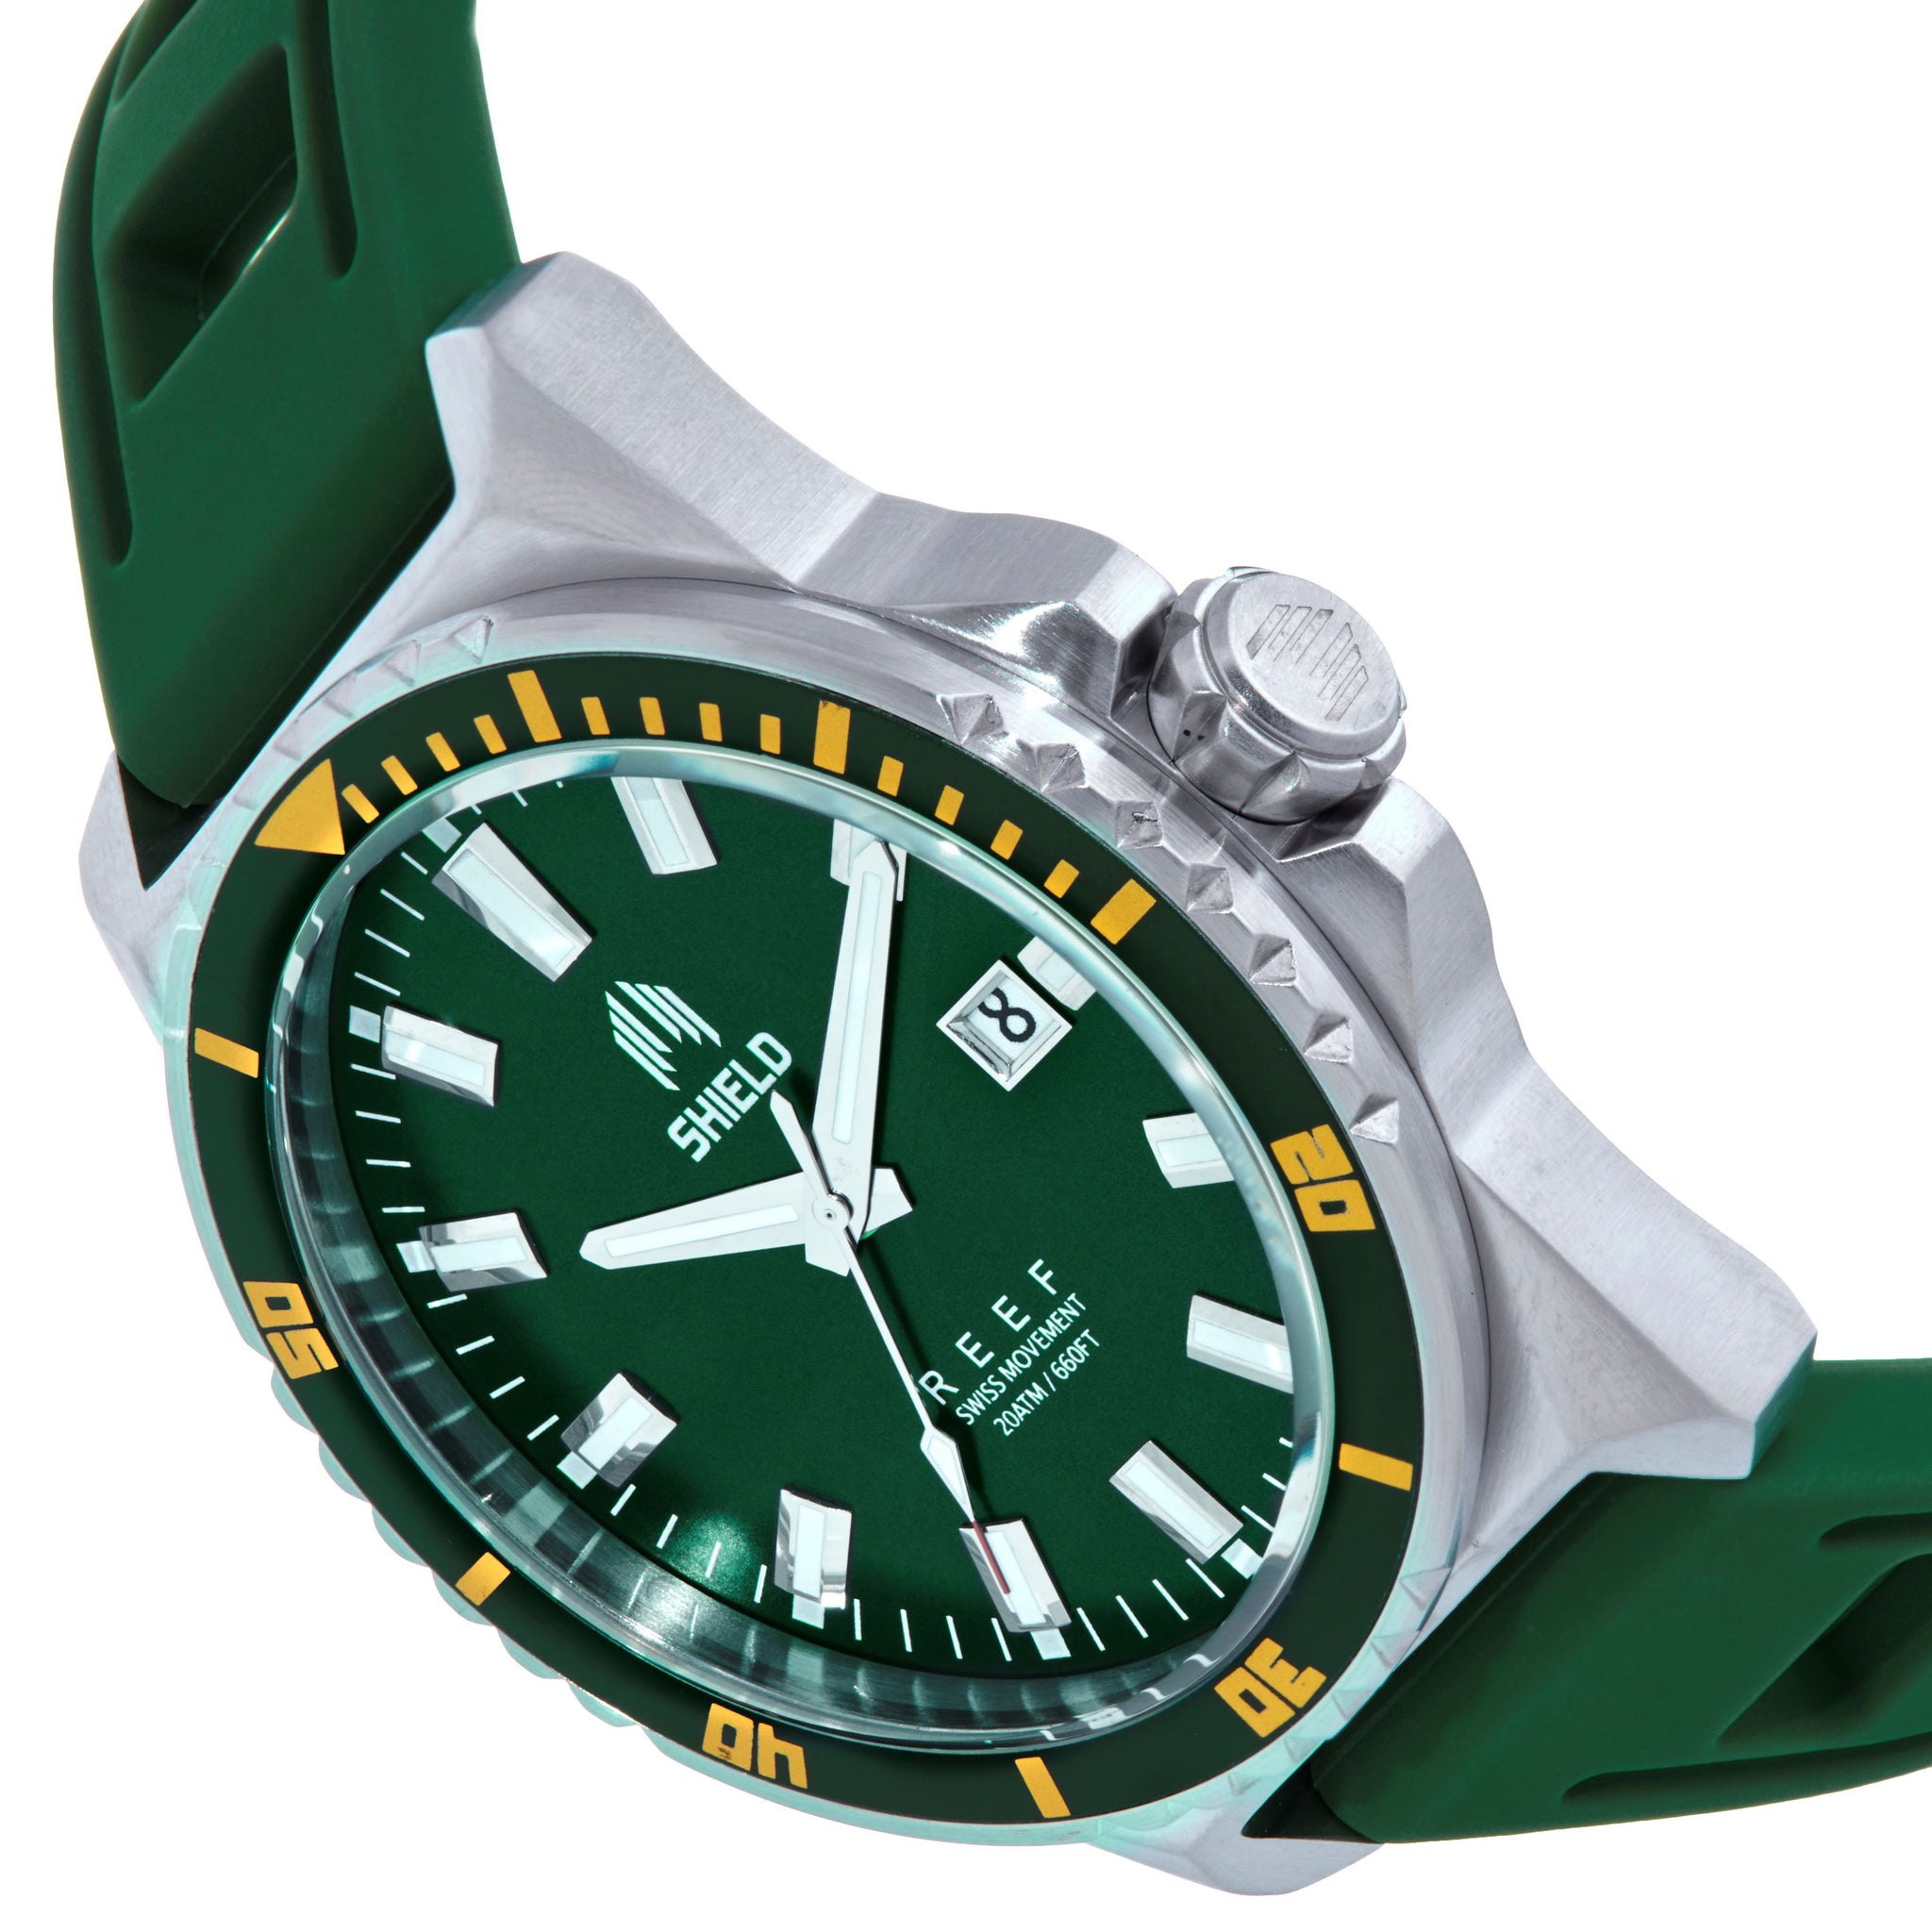 Shield Reef Strap Watch w/Date - Green - SLDSH119-4